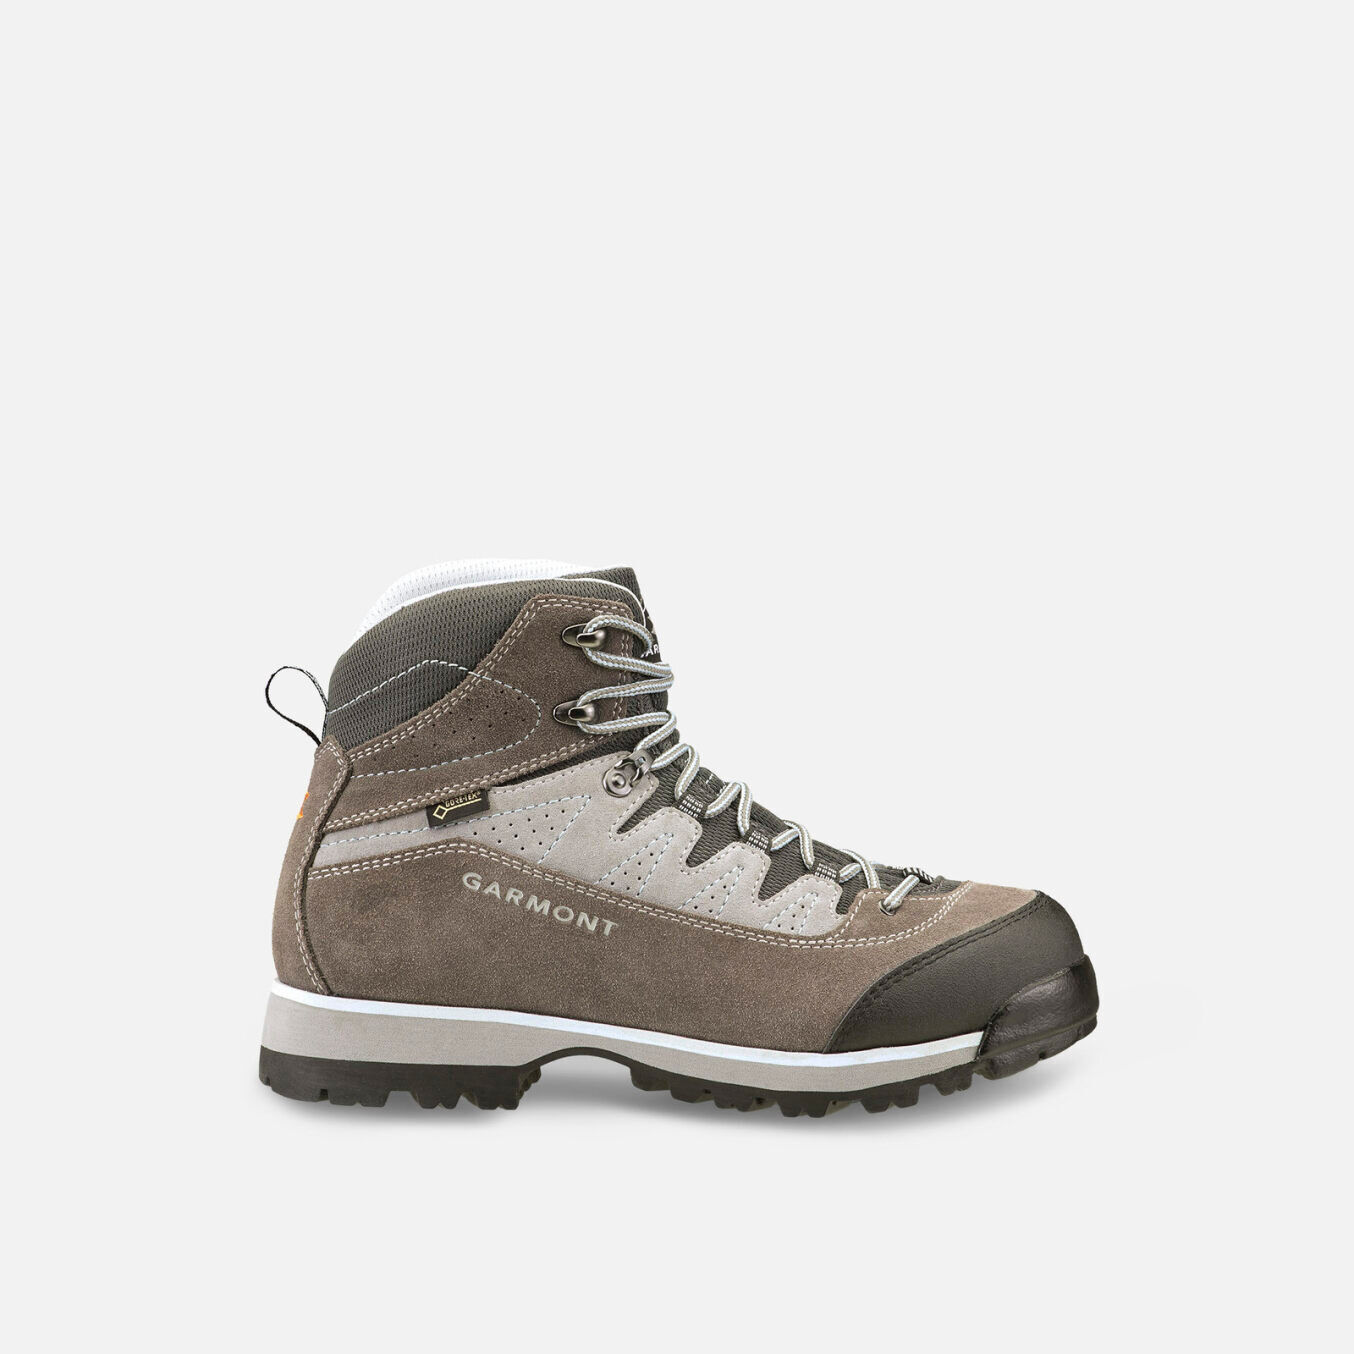 Garmont Lagorai GTX - Hiking shoes - Women's